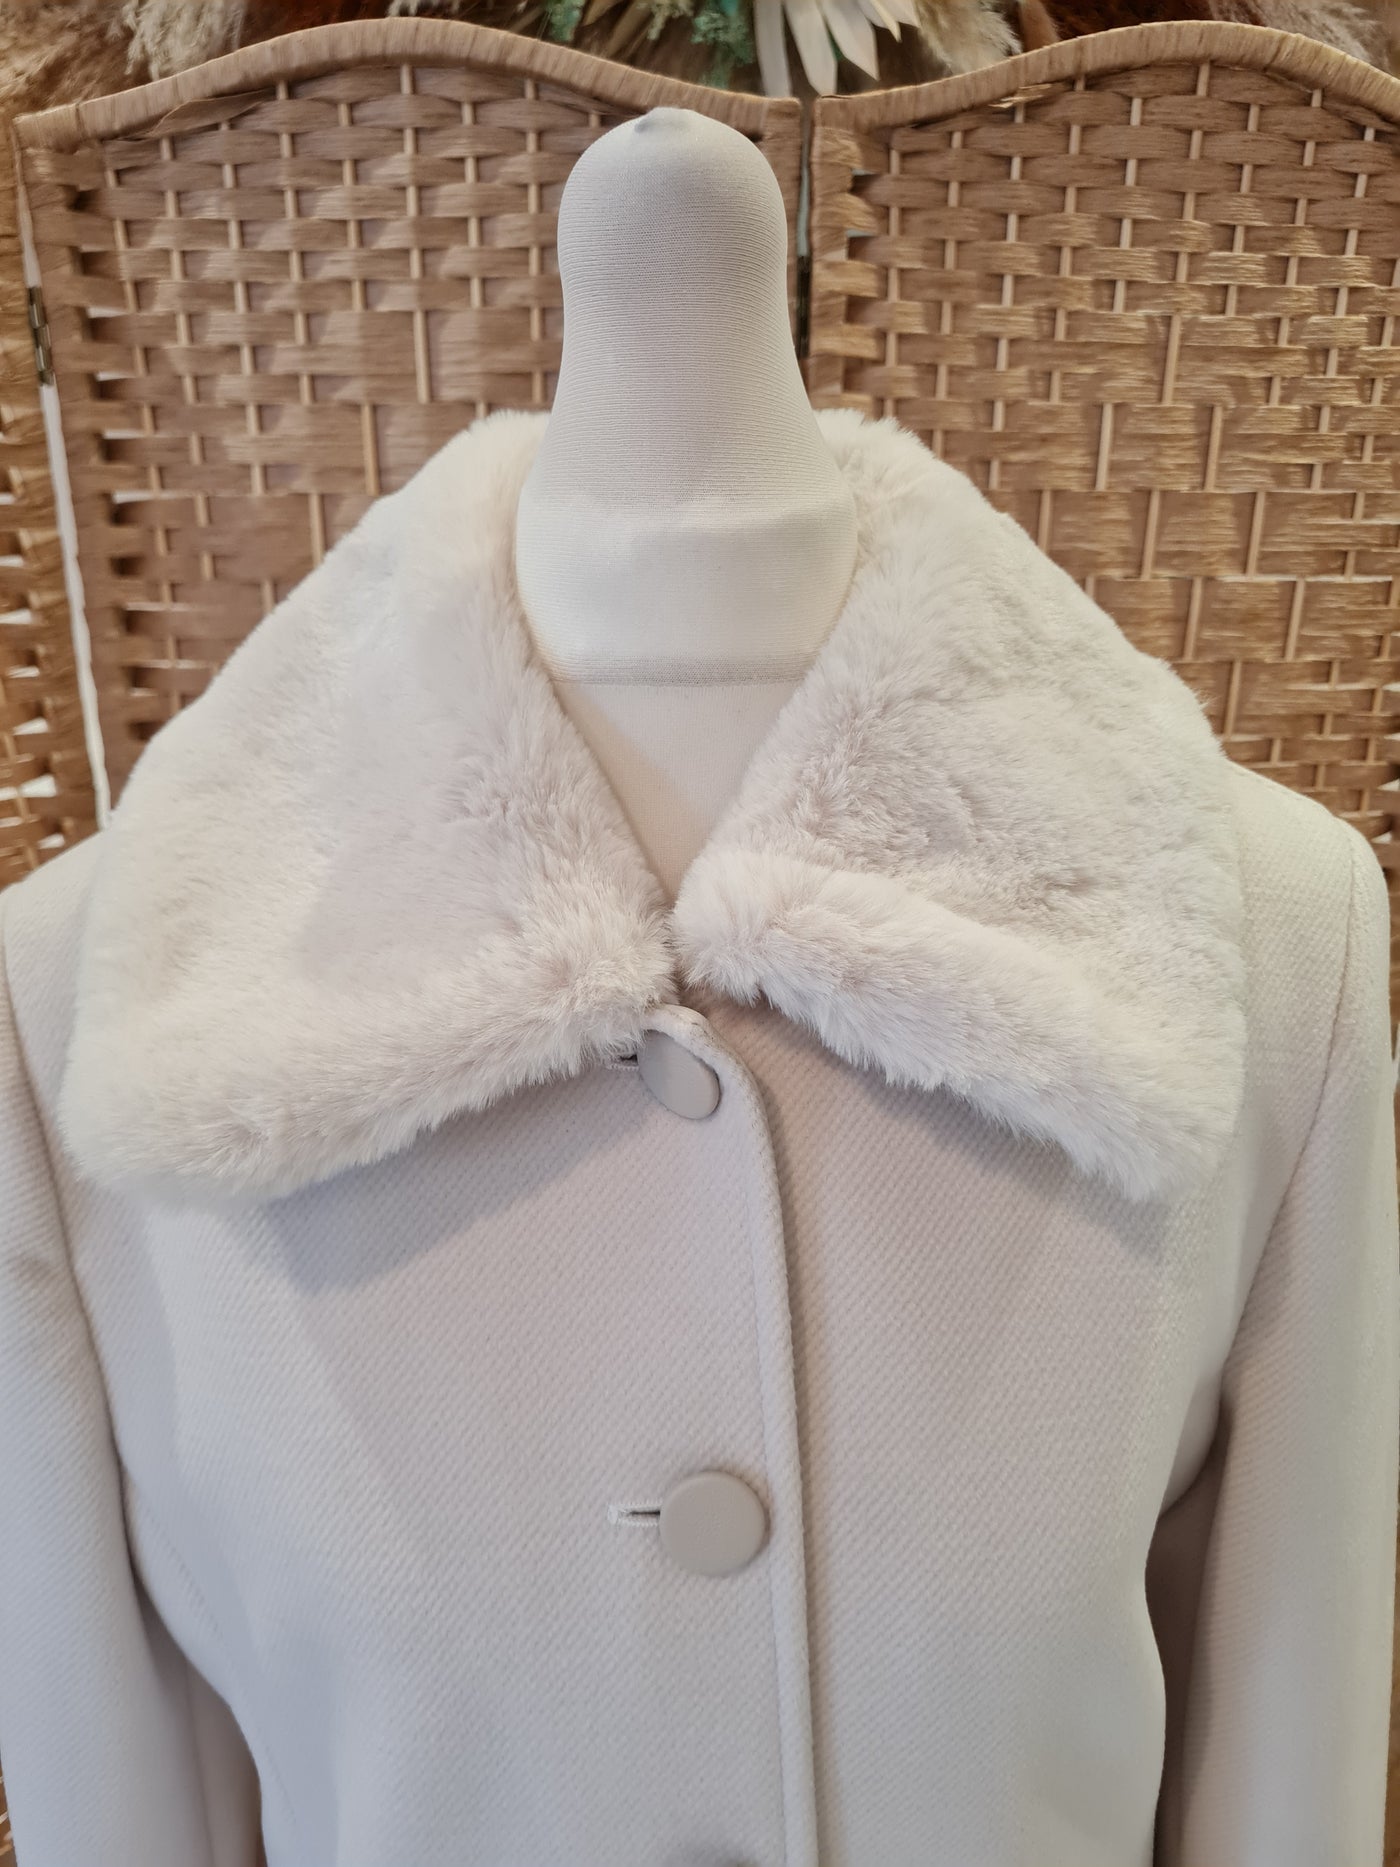 XT Studio winter white coat 8 New